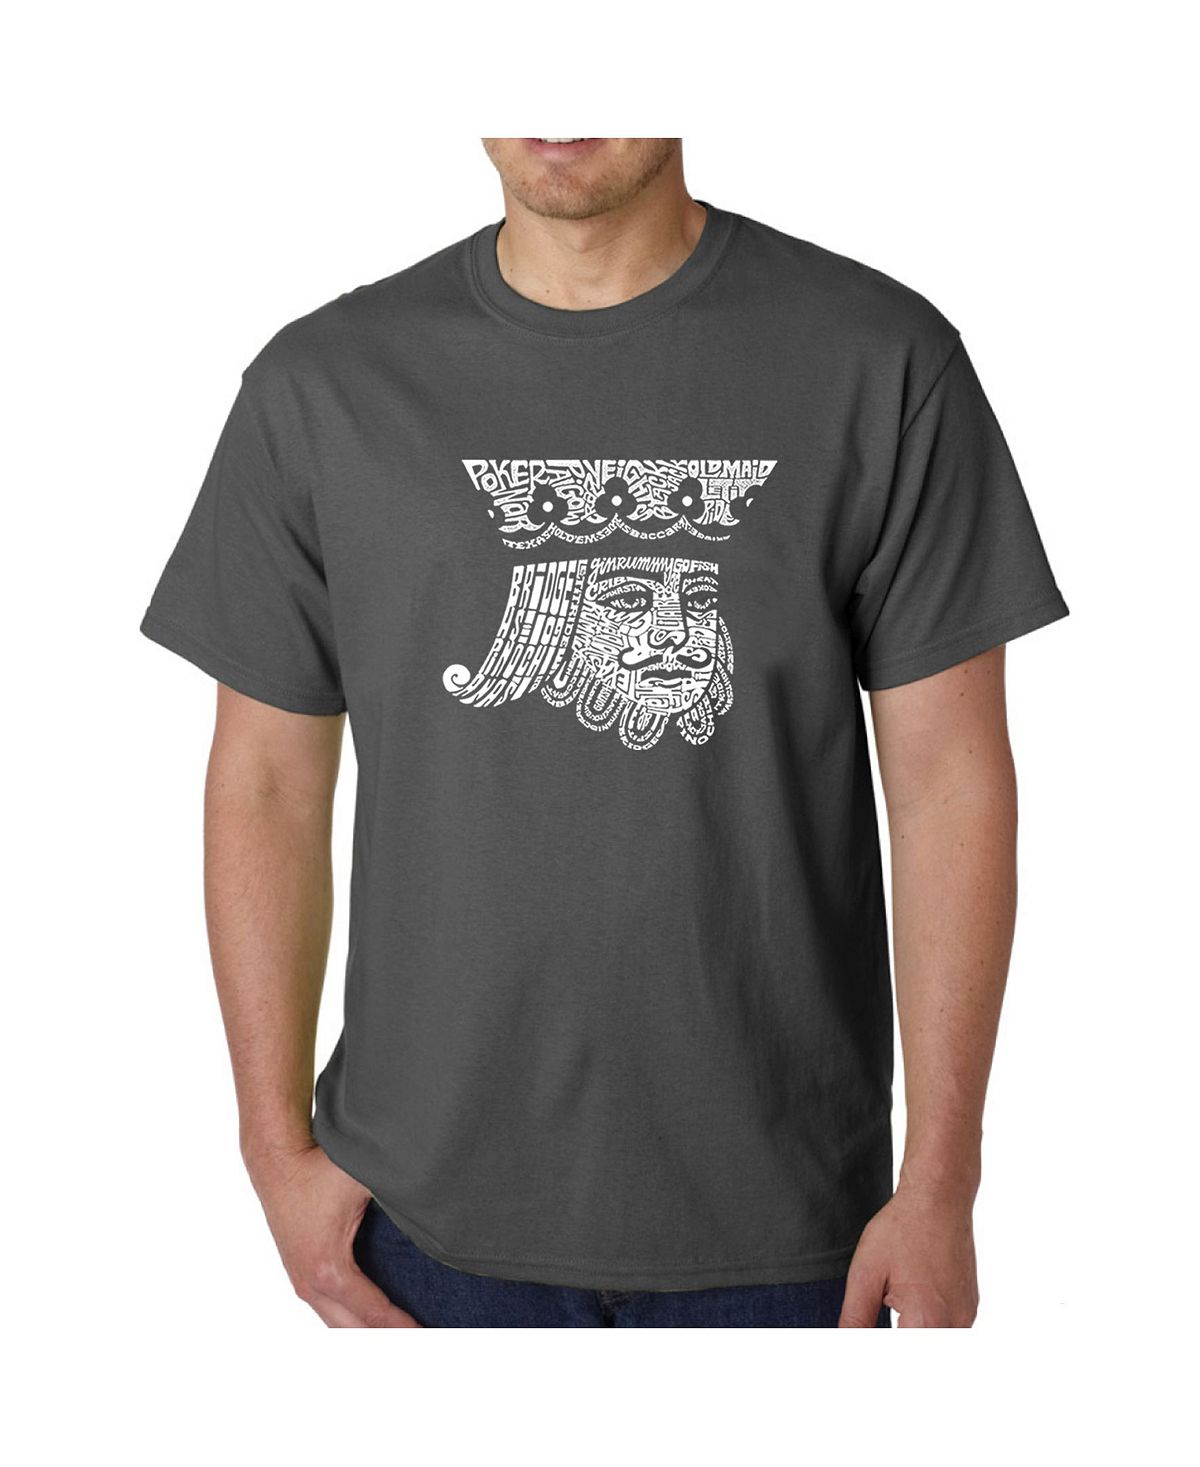 Мужская футболка с рисунком Word Art — Пиковый король LA Pop Art дюбов в карточные игры